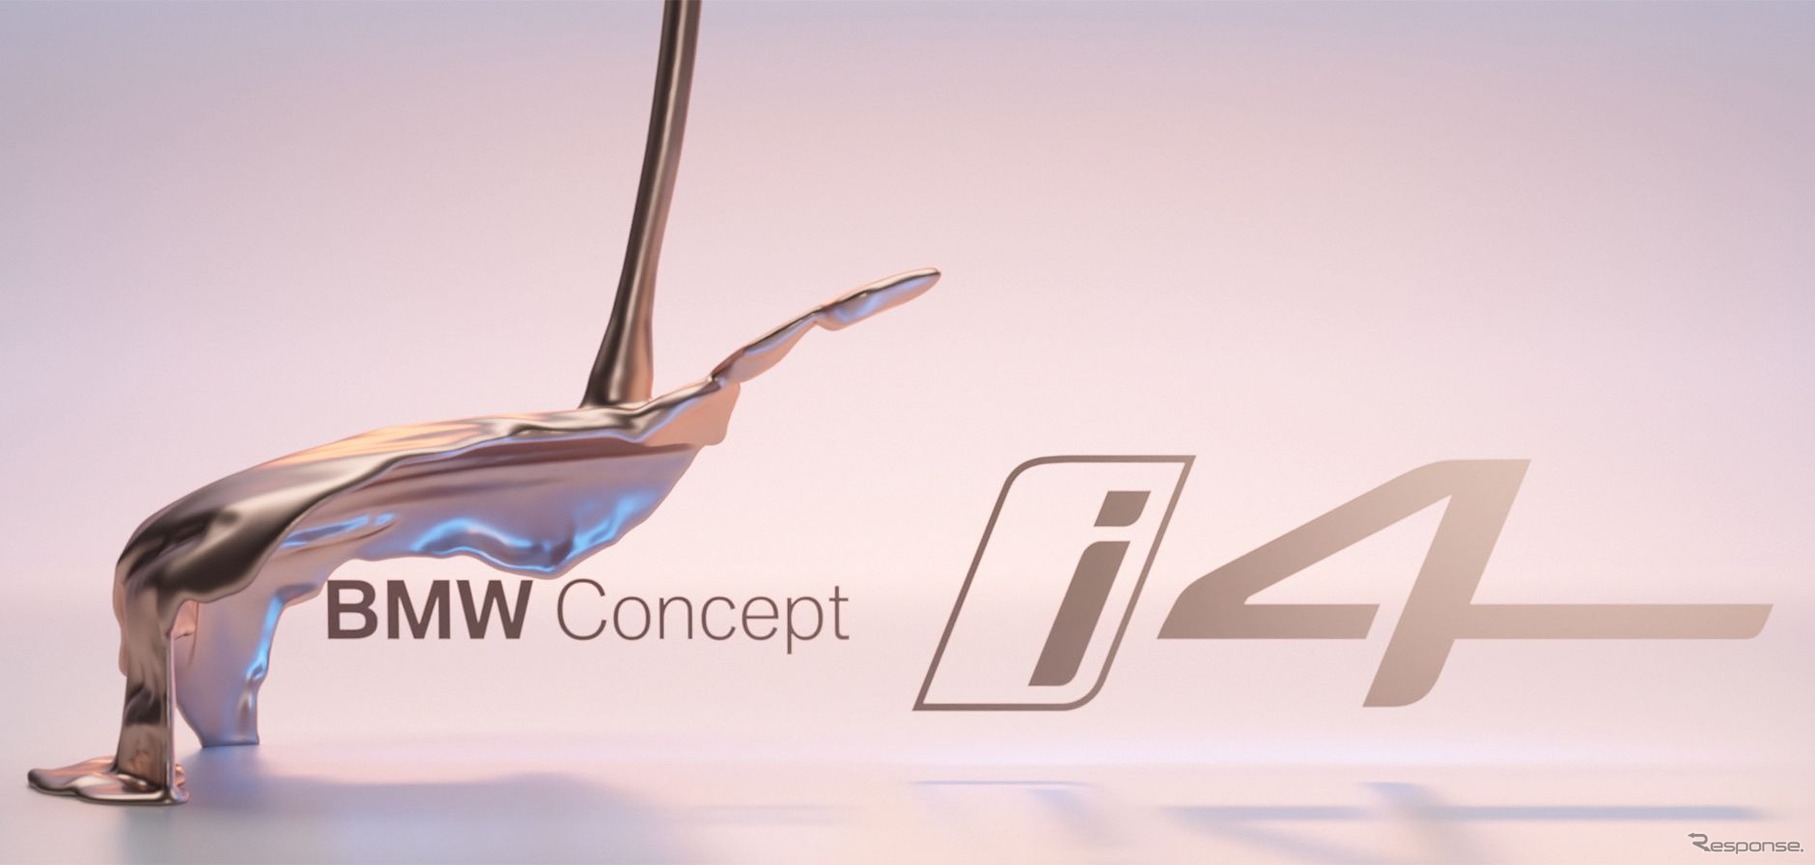 BMW コンセプト i4 のティザーイメージ